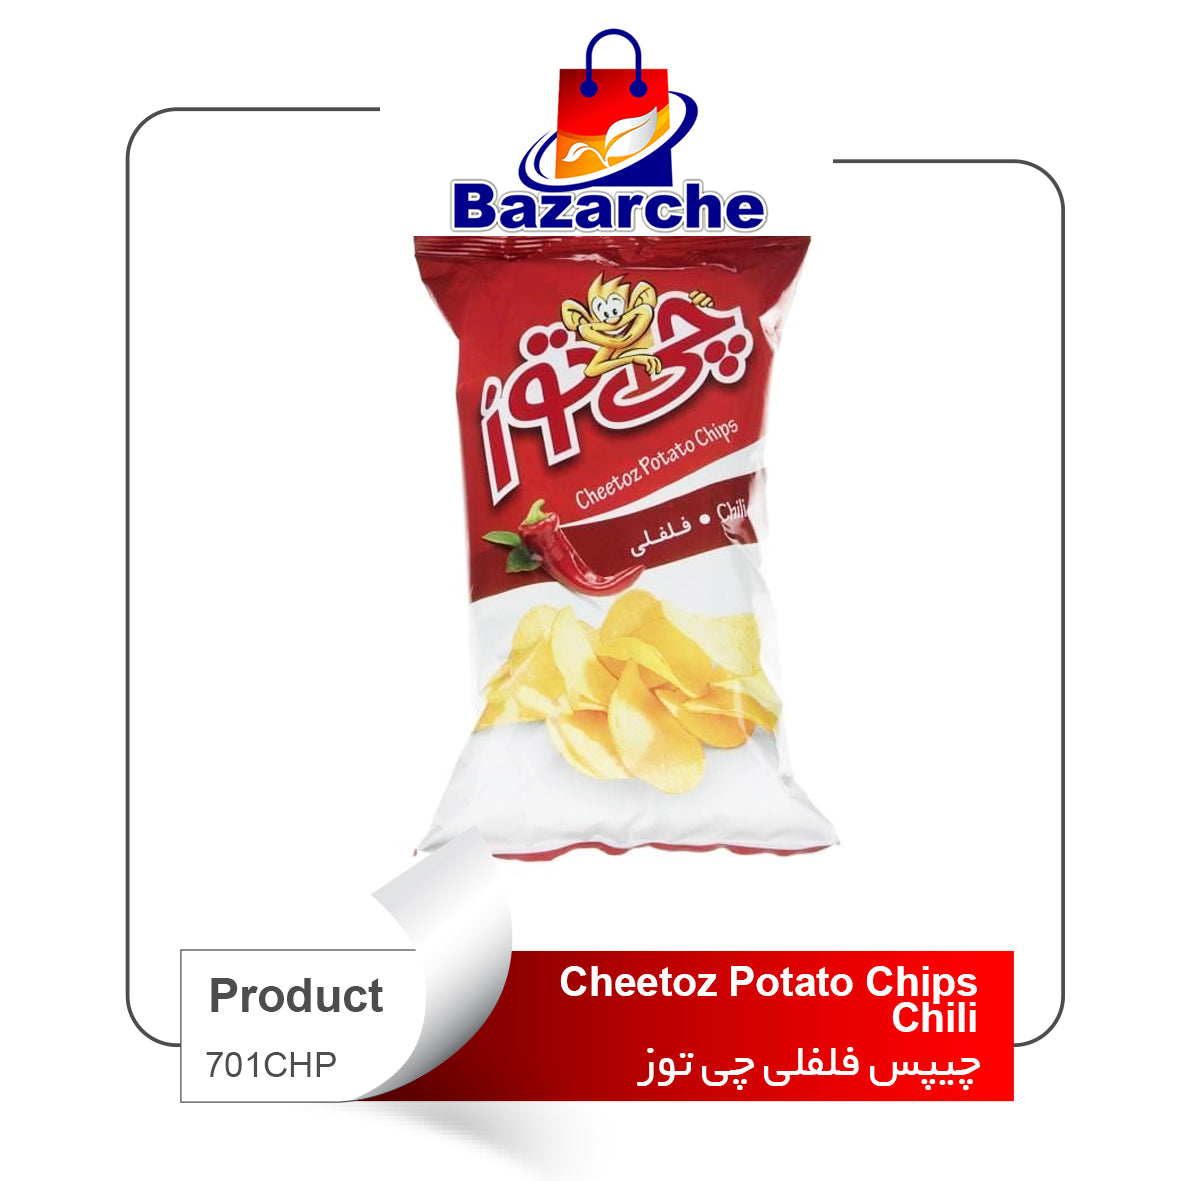 Cheetoz Potato Chips Chili(چیپس فلفلی)